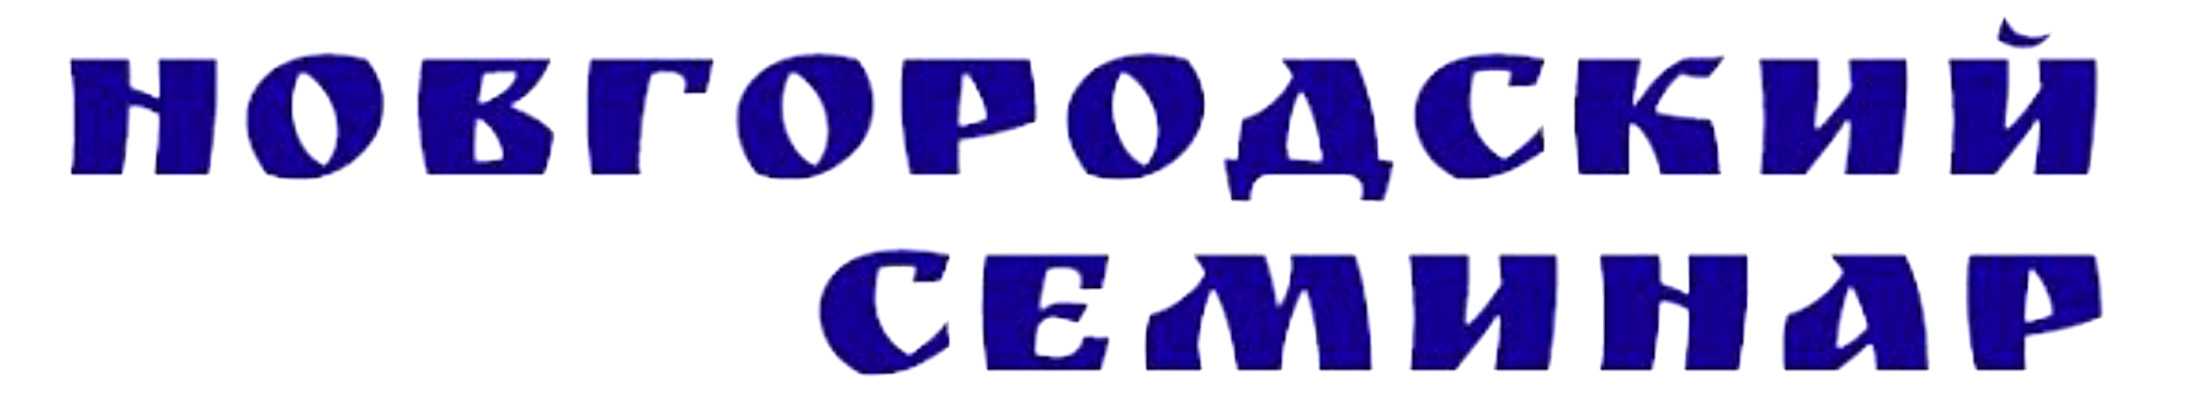 Новгородский семинар: “Селища на месте монастырей в округе средневекового Новгорода”